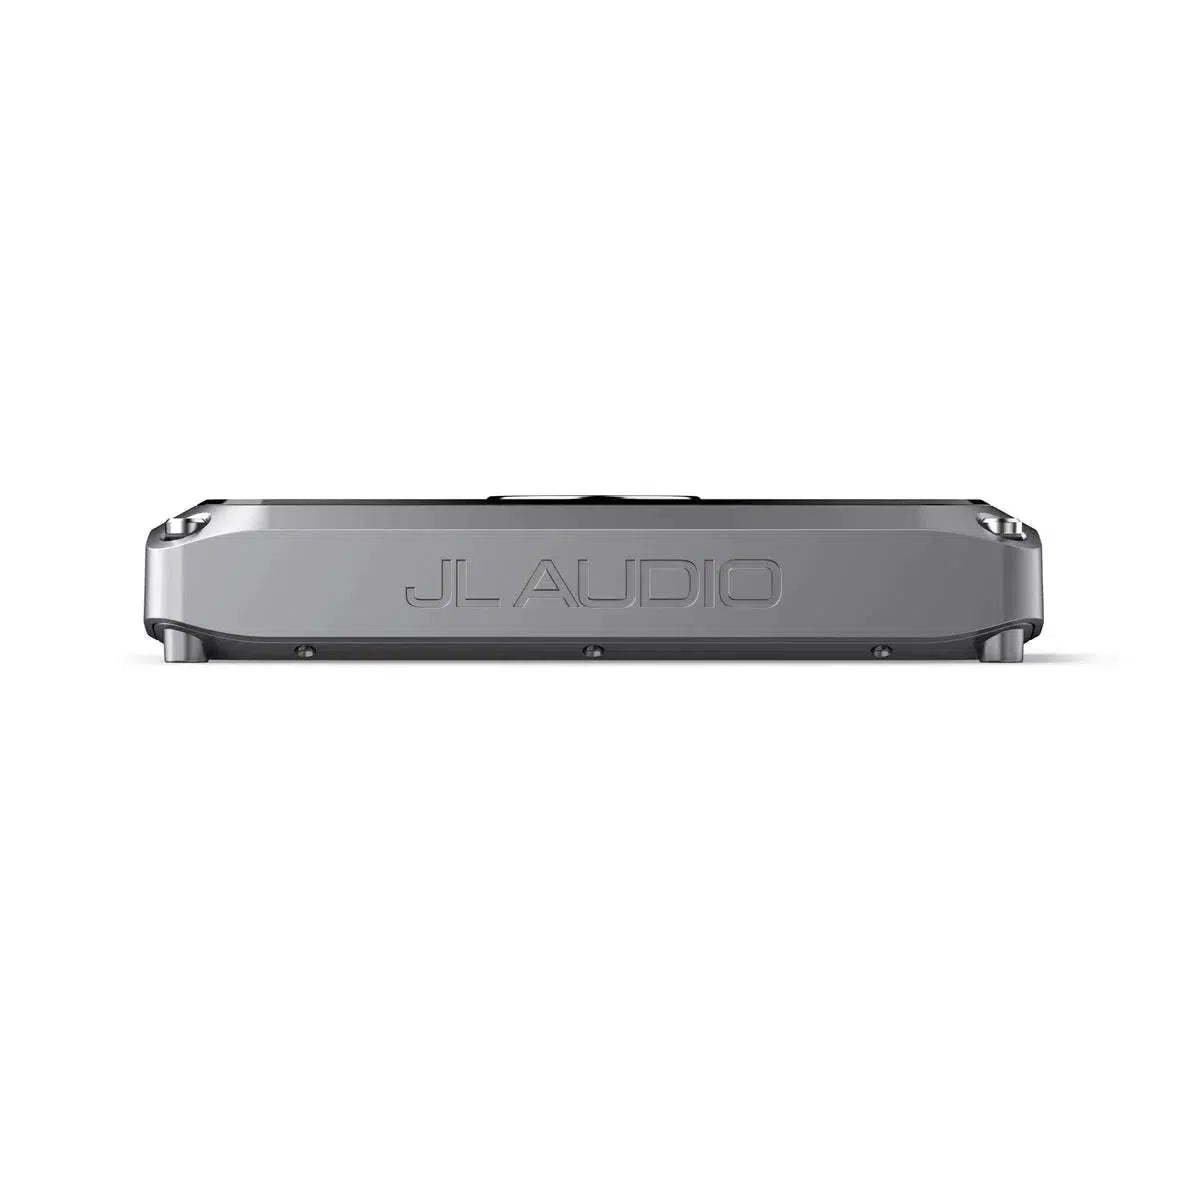 JL Audio-VX1000/1I-1-Channel DSP Amplifier-Masori.de